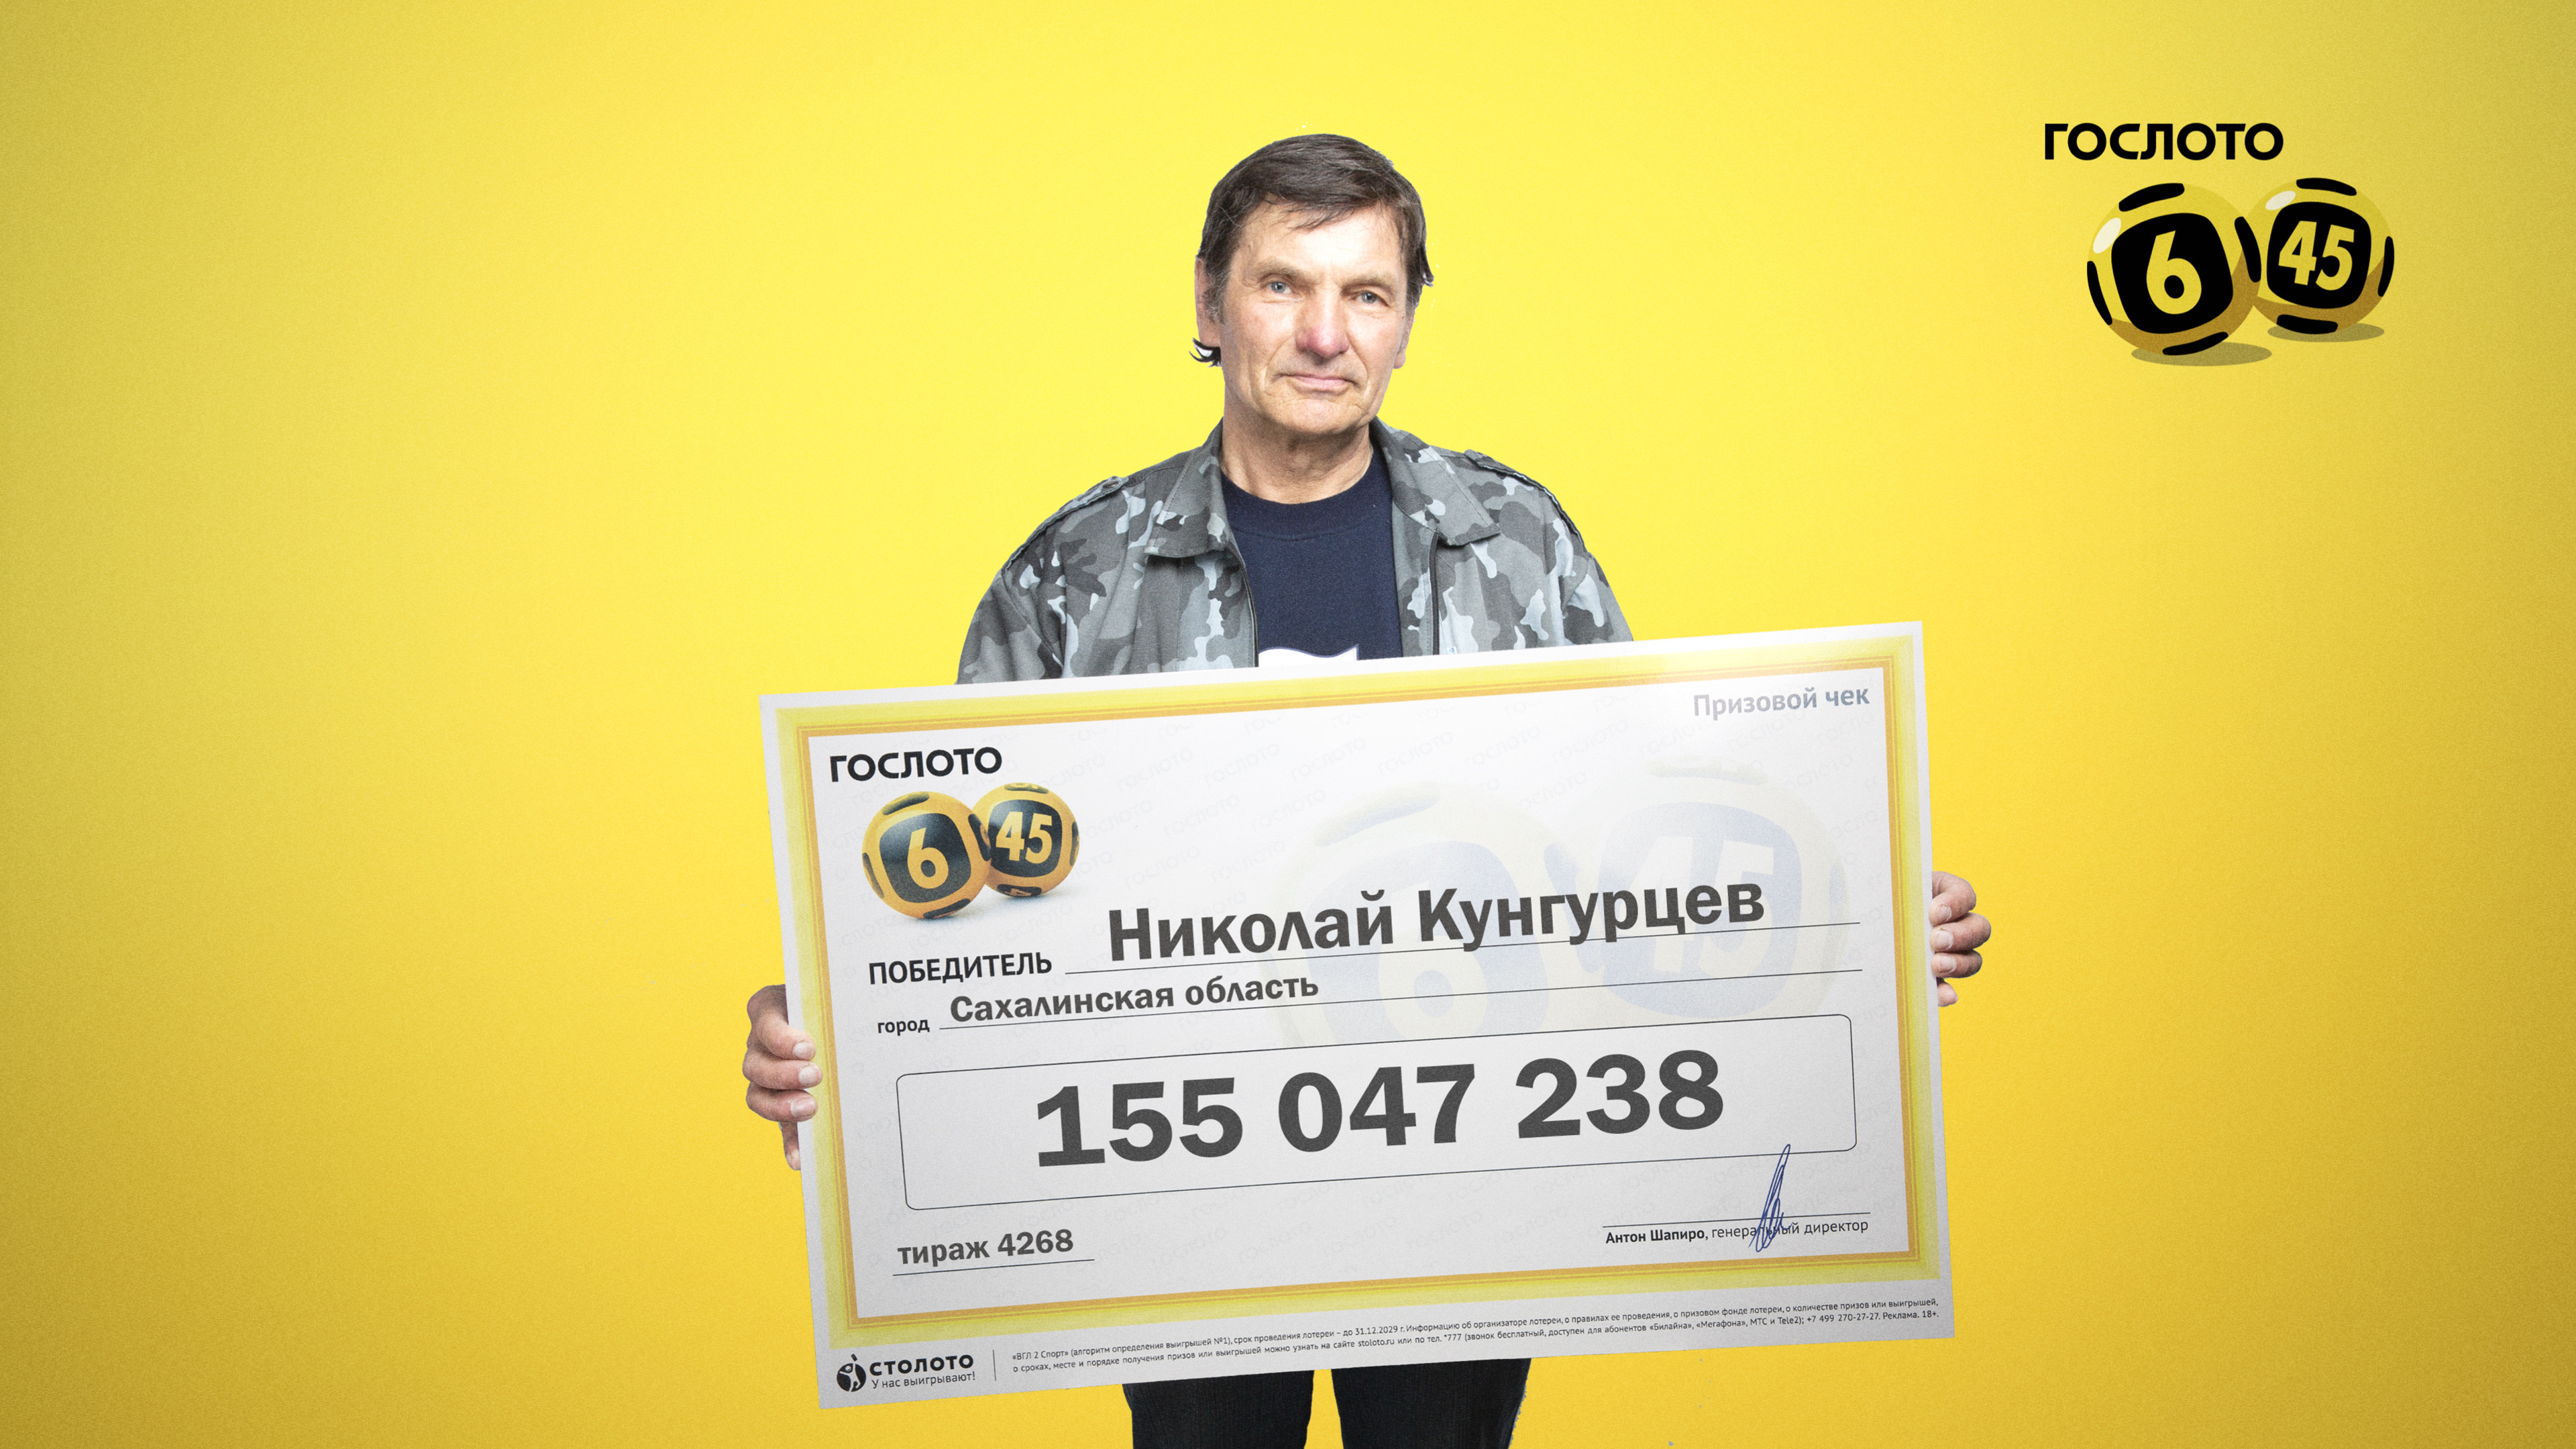 Все лотереи в россии